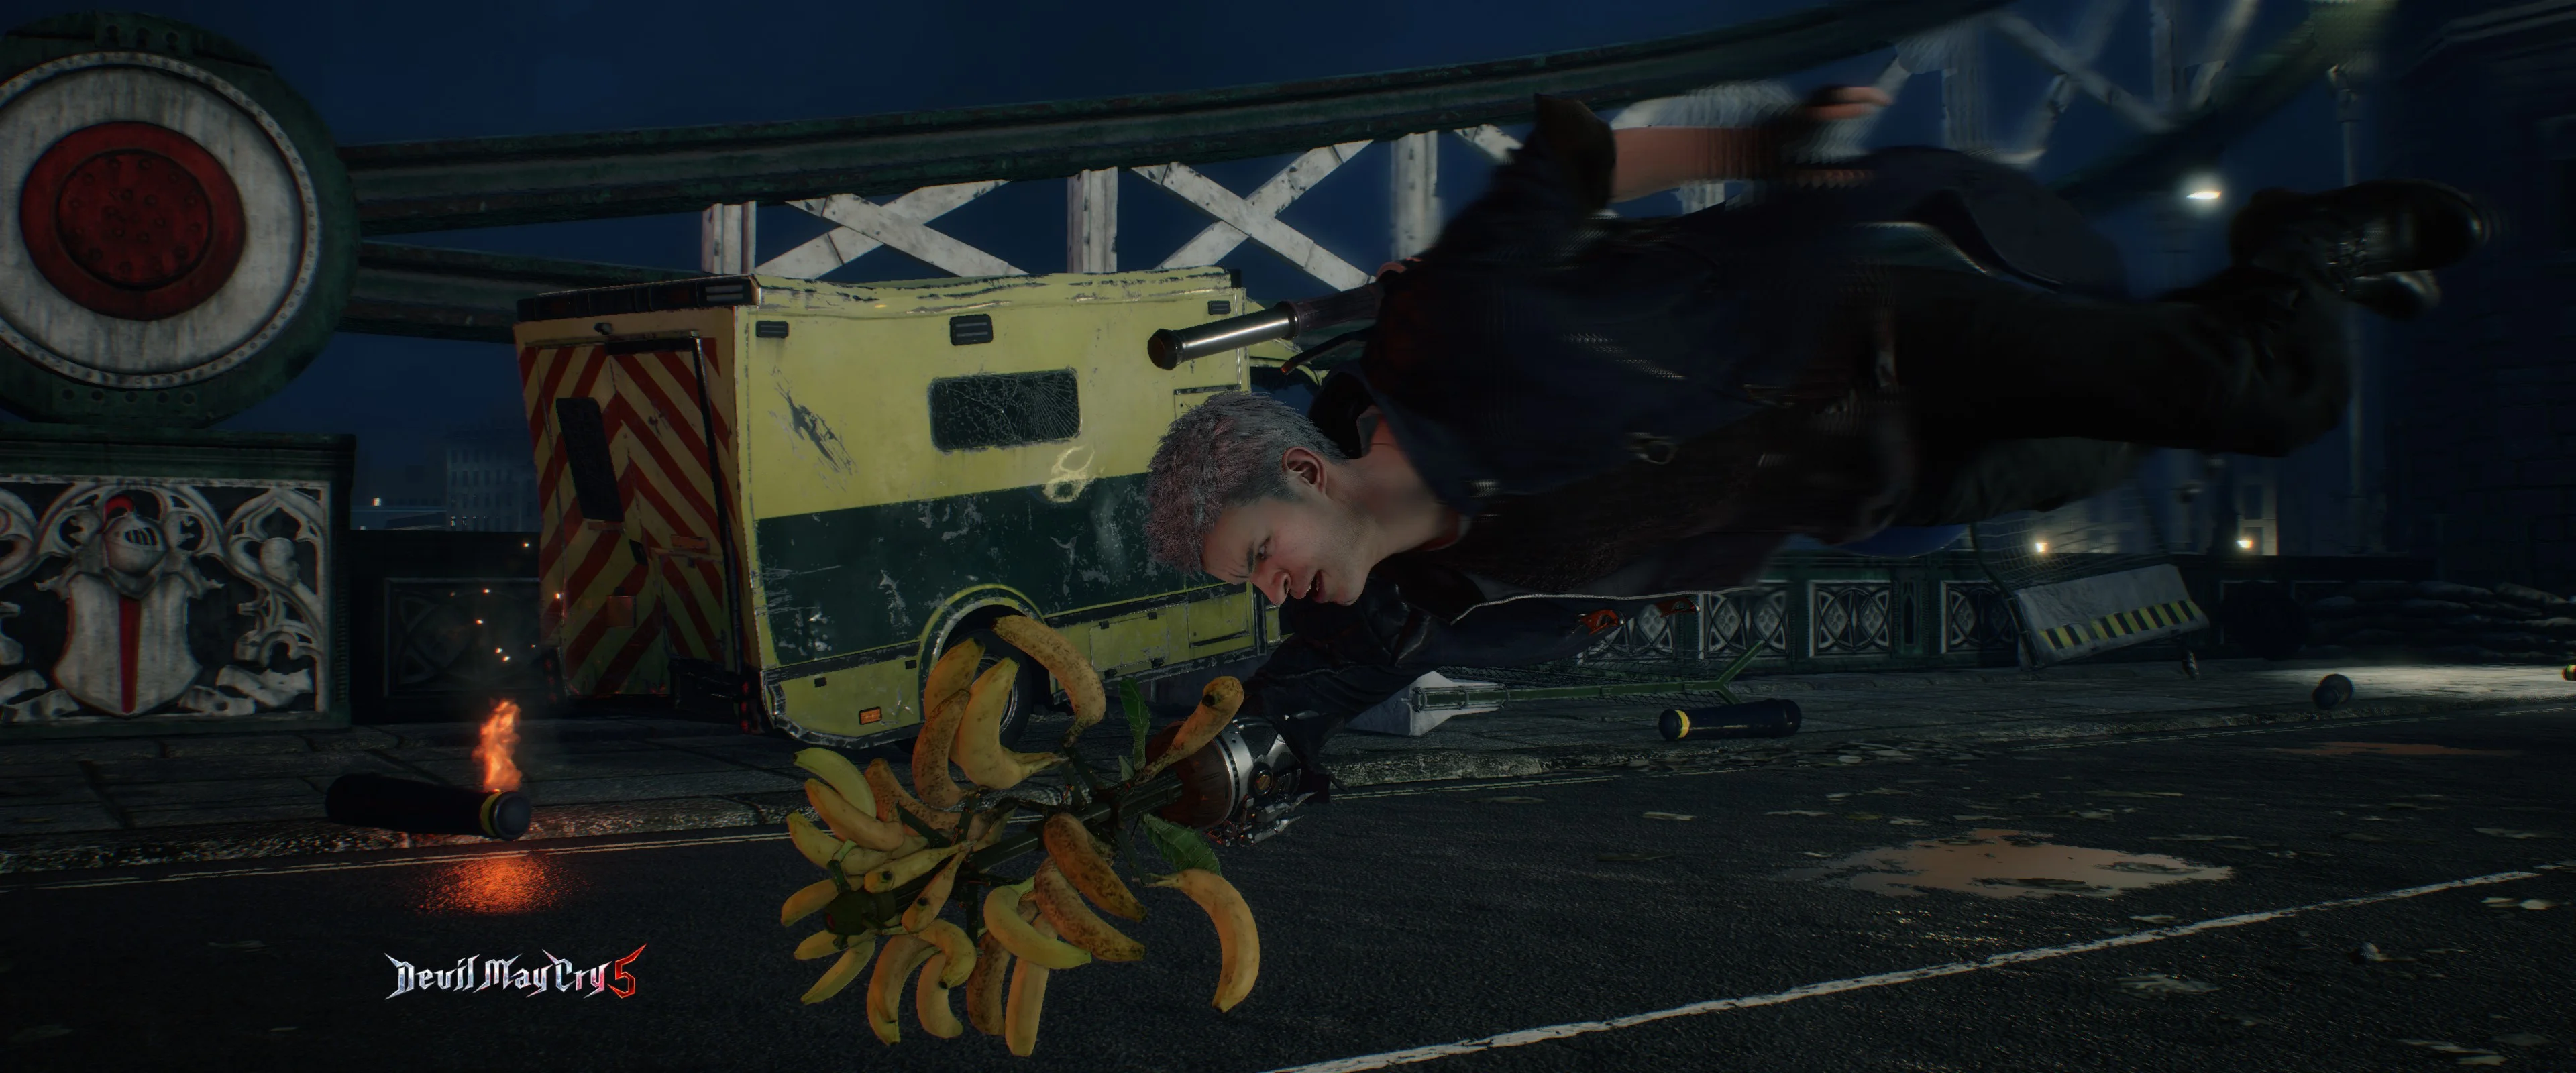 Моддер добавил в Devil May Cry V эксклюзивный для Японии бич дьявола в виде связки бананов - фото 2